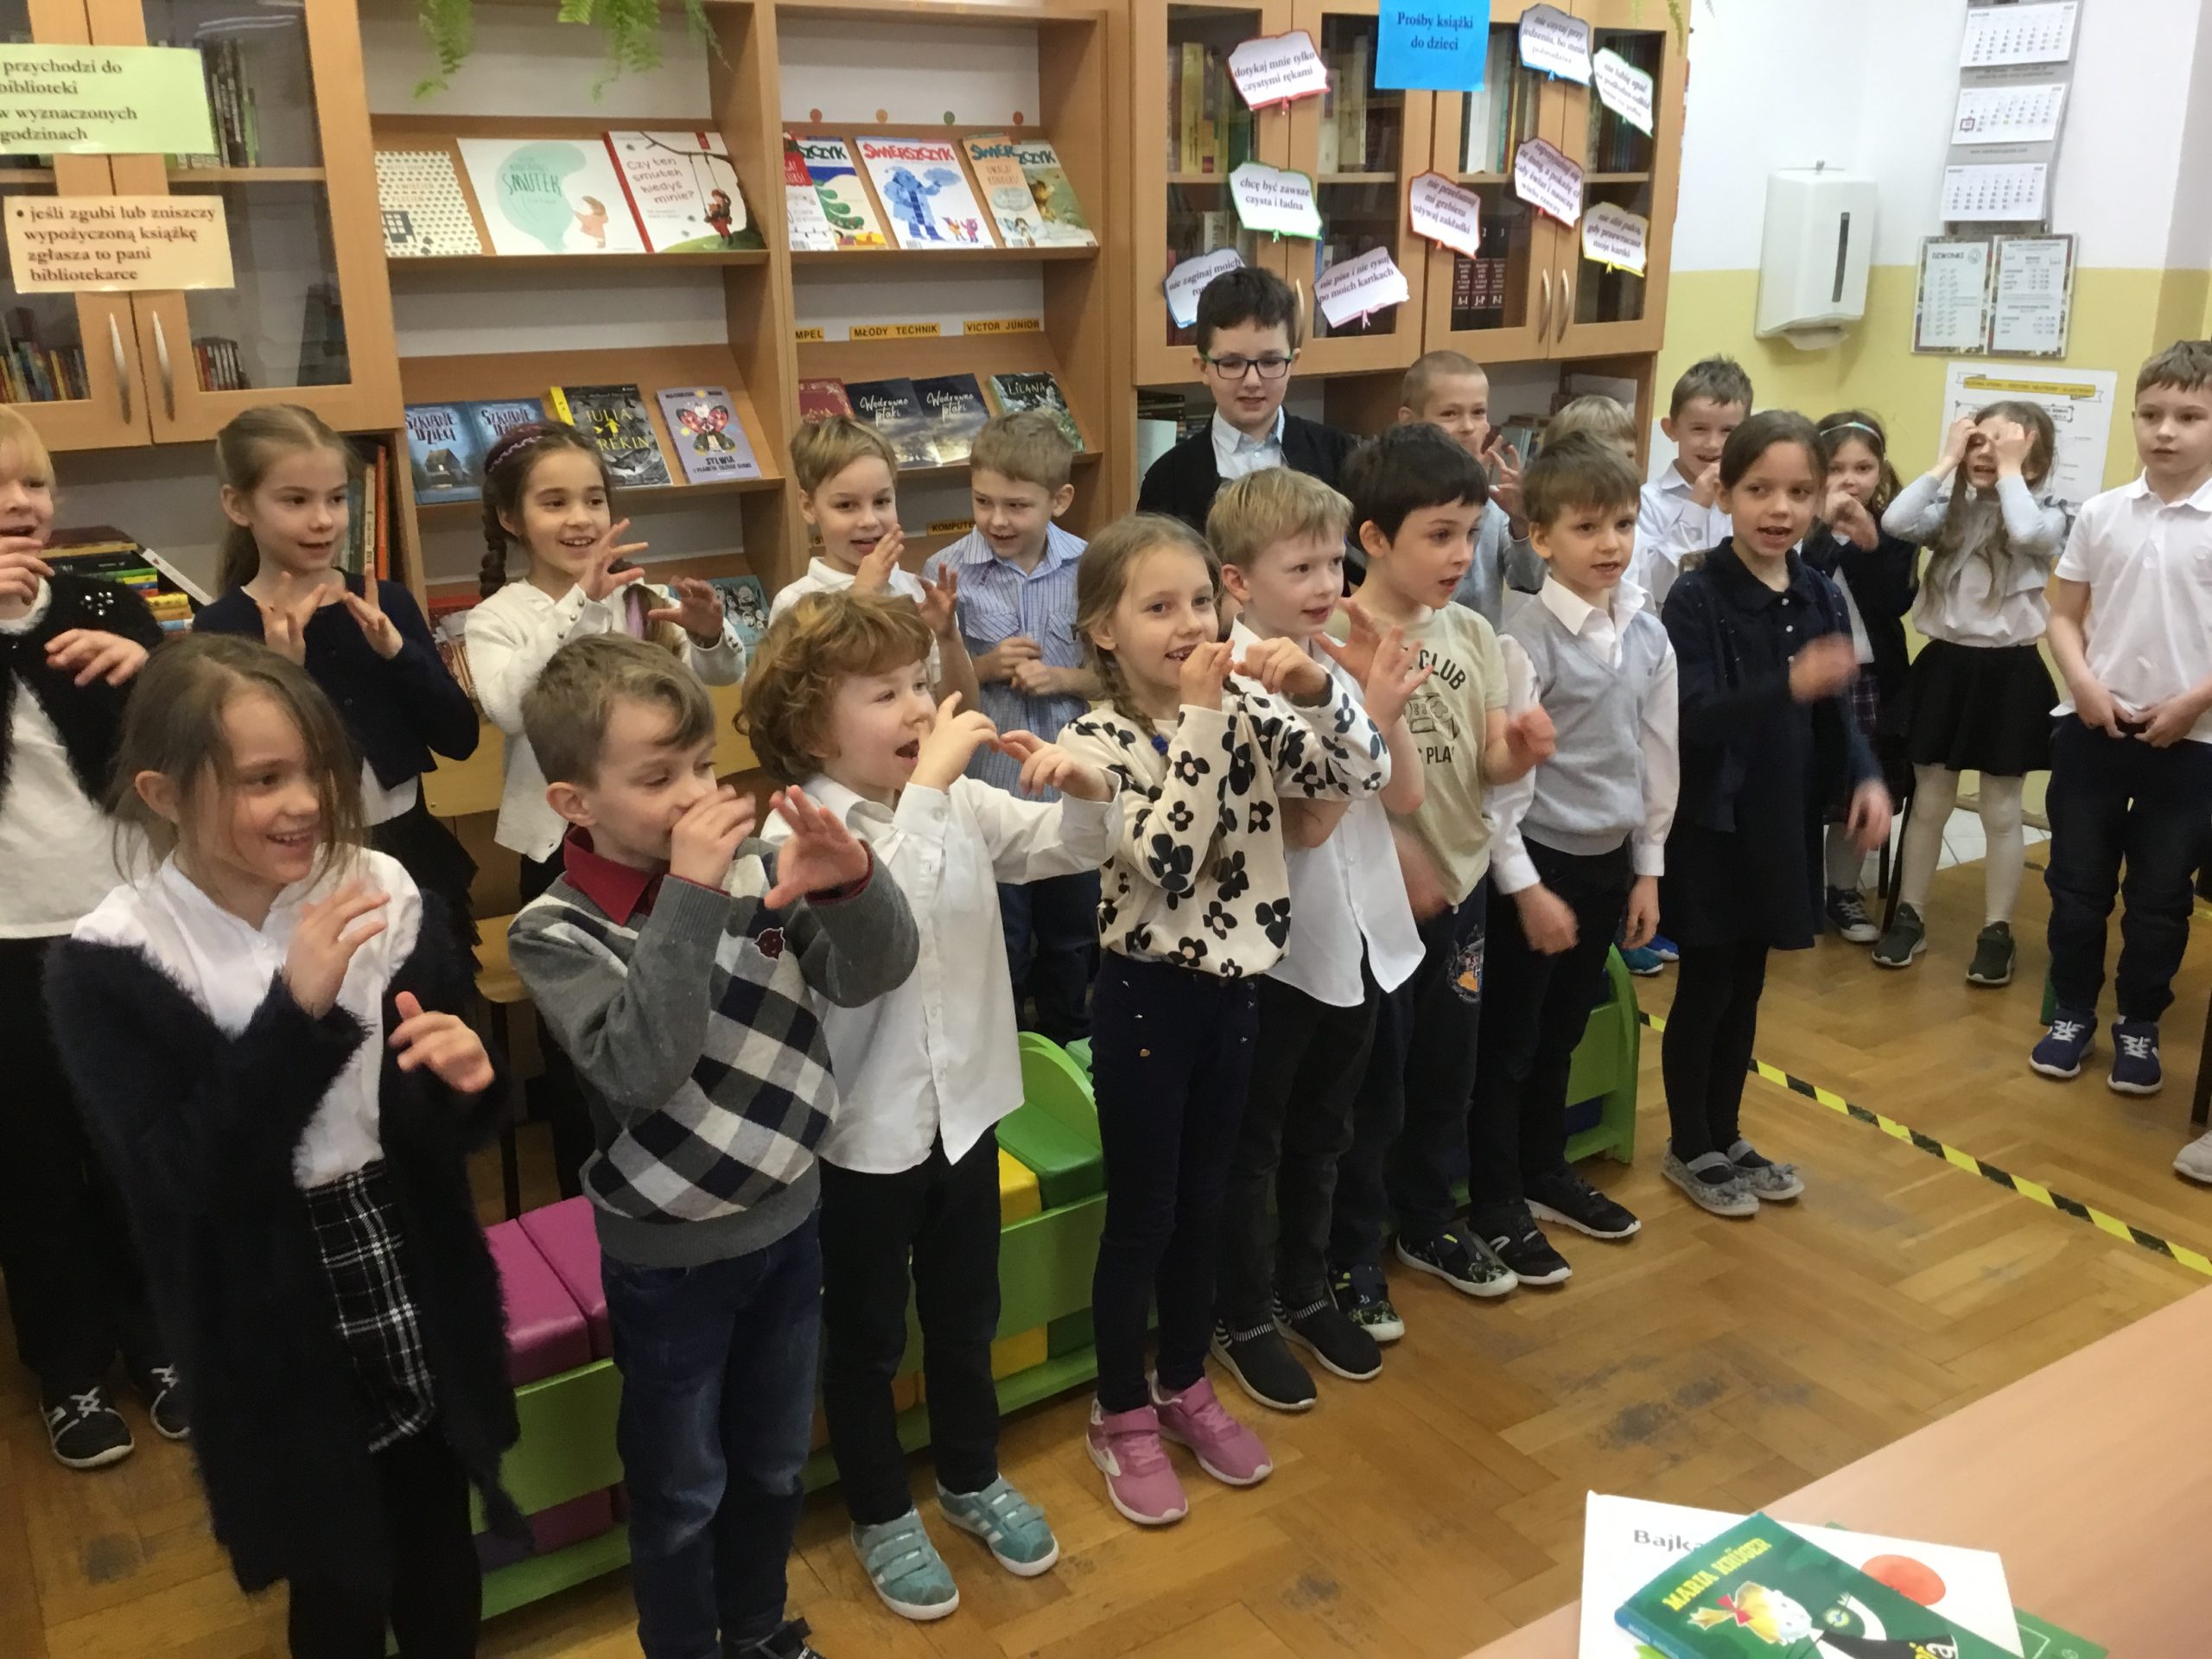 Klasa pierwsza B podaczas gestykulowania i  śpiewania  piosenki w bibliotece szkolnej